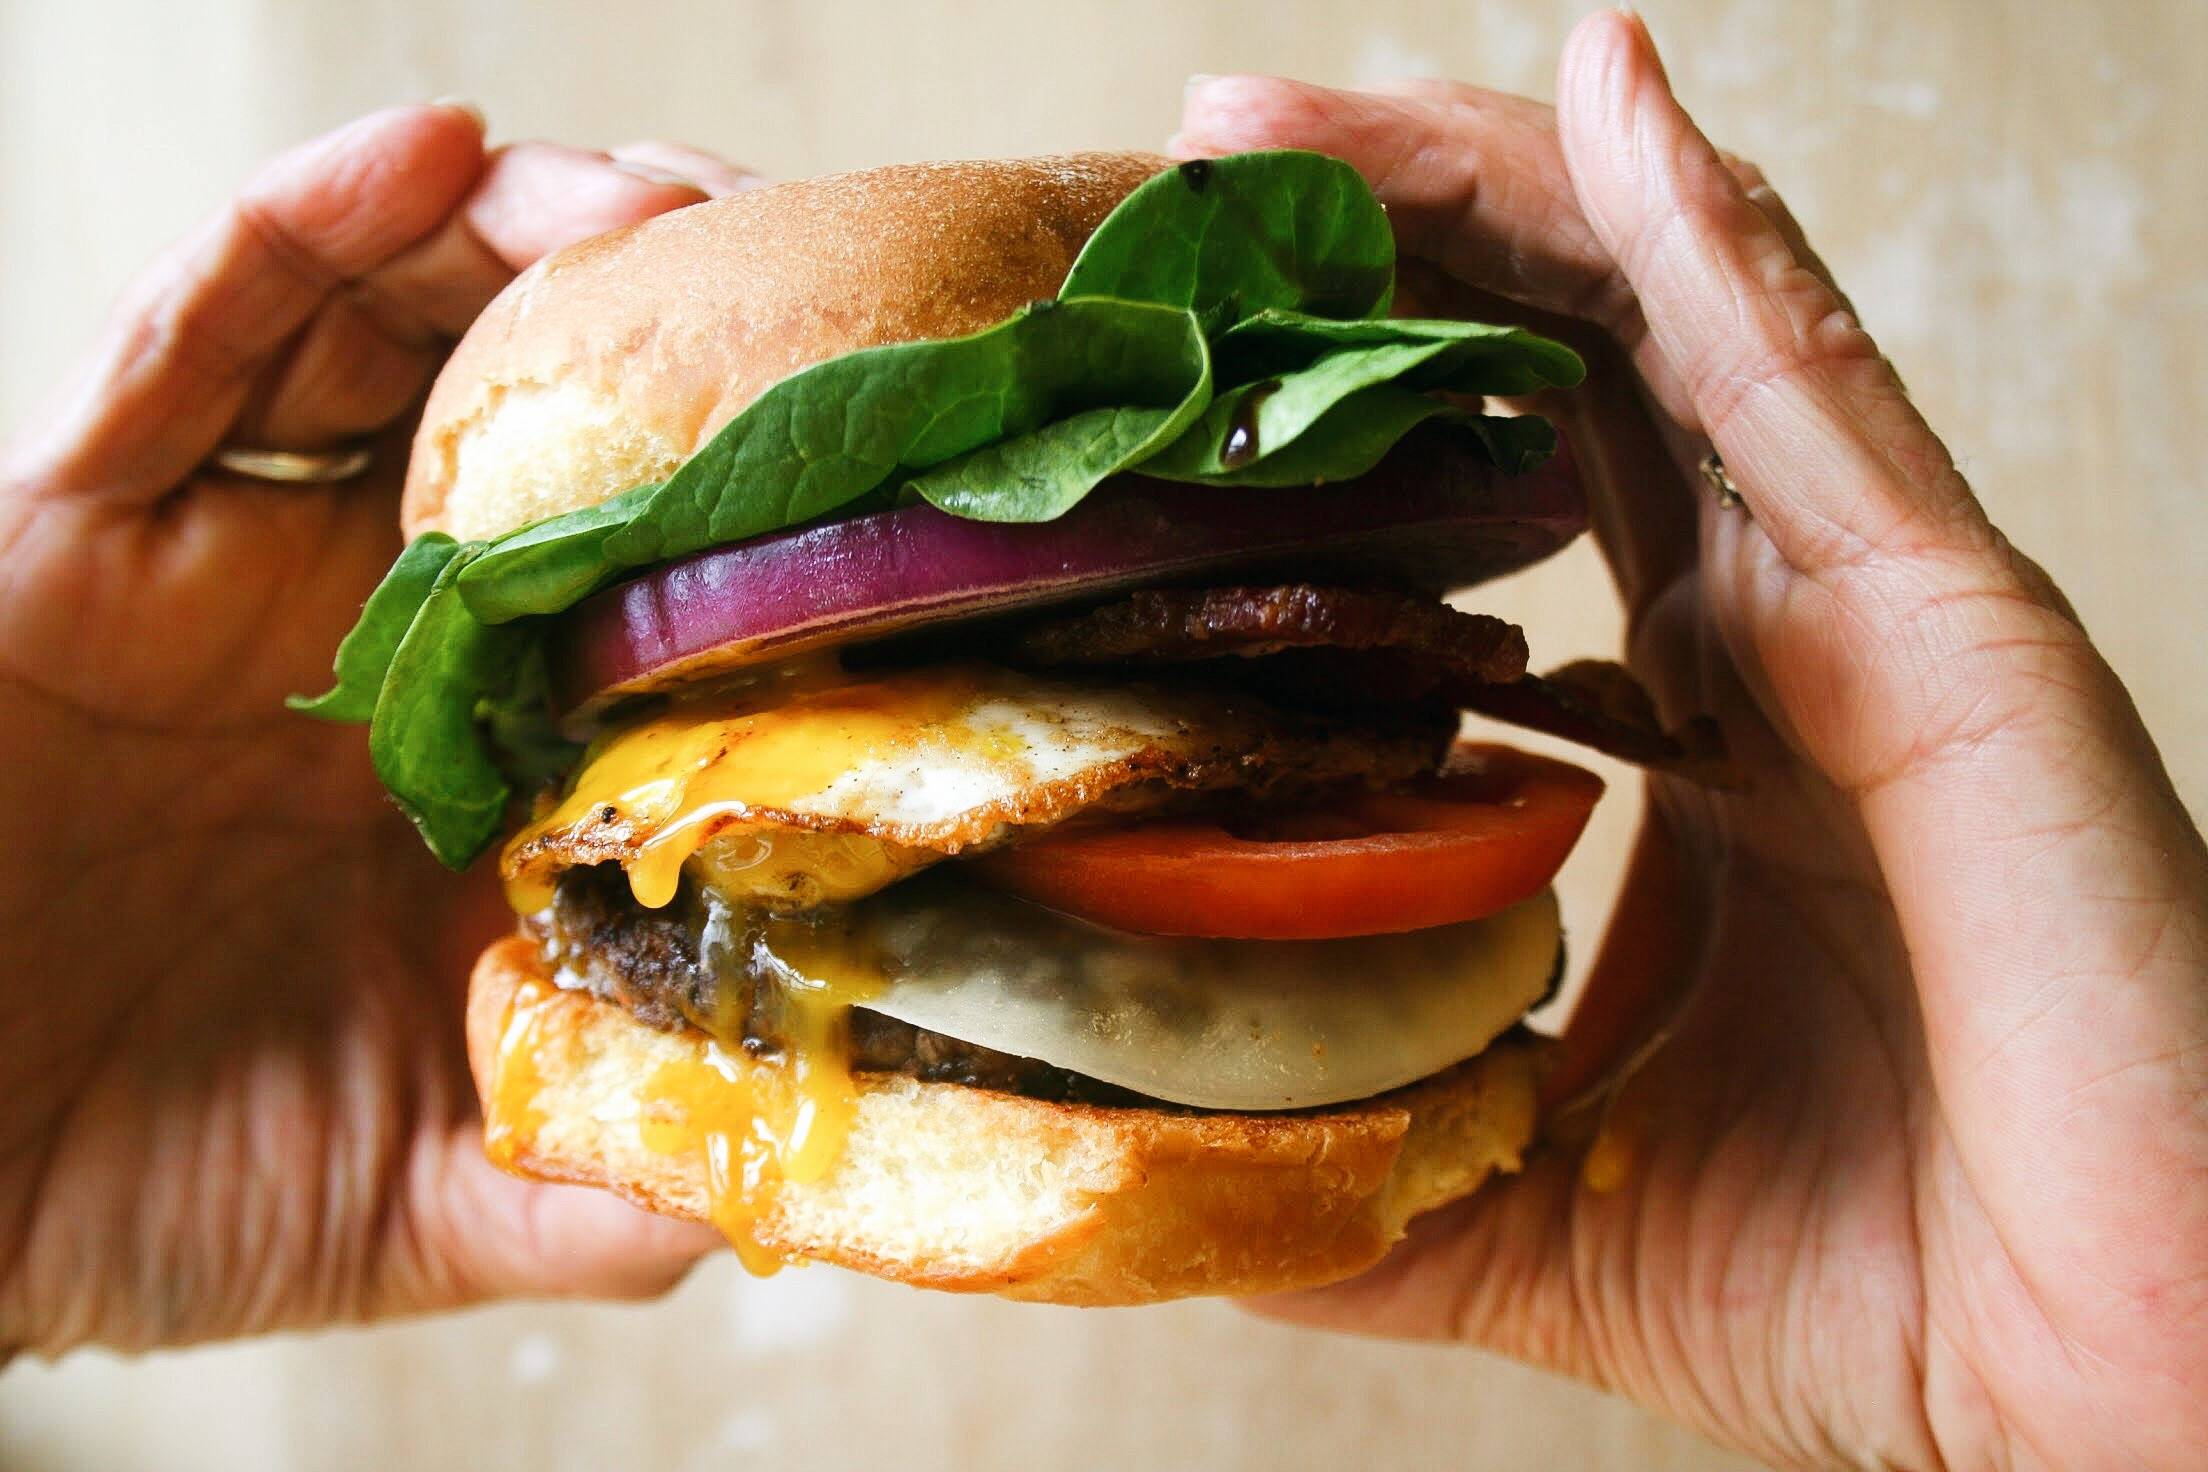 Blended Burger - grateful burger original in hands